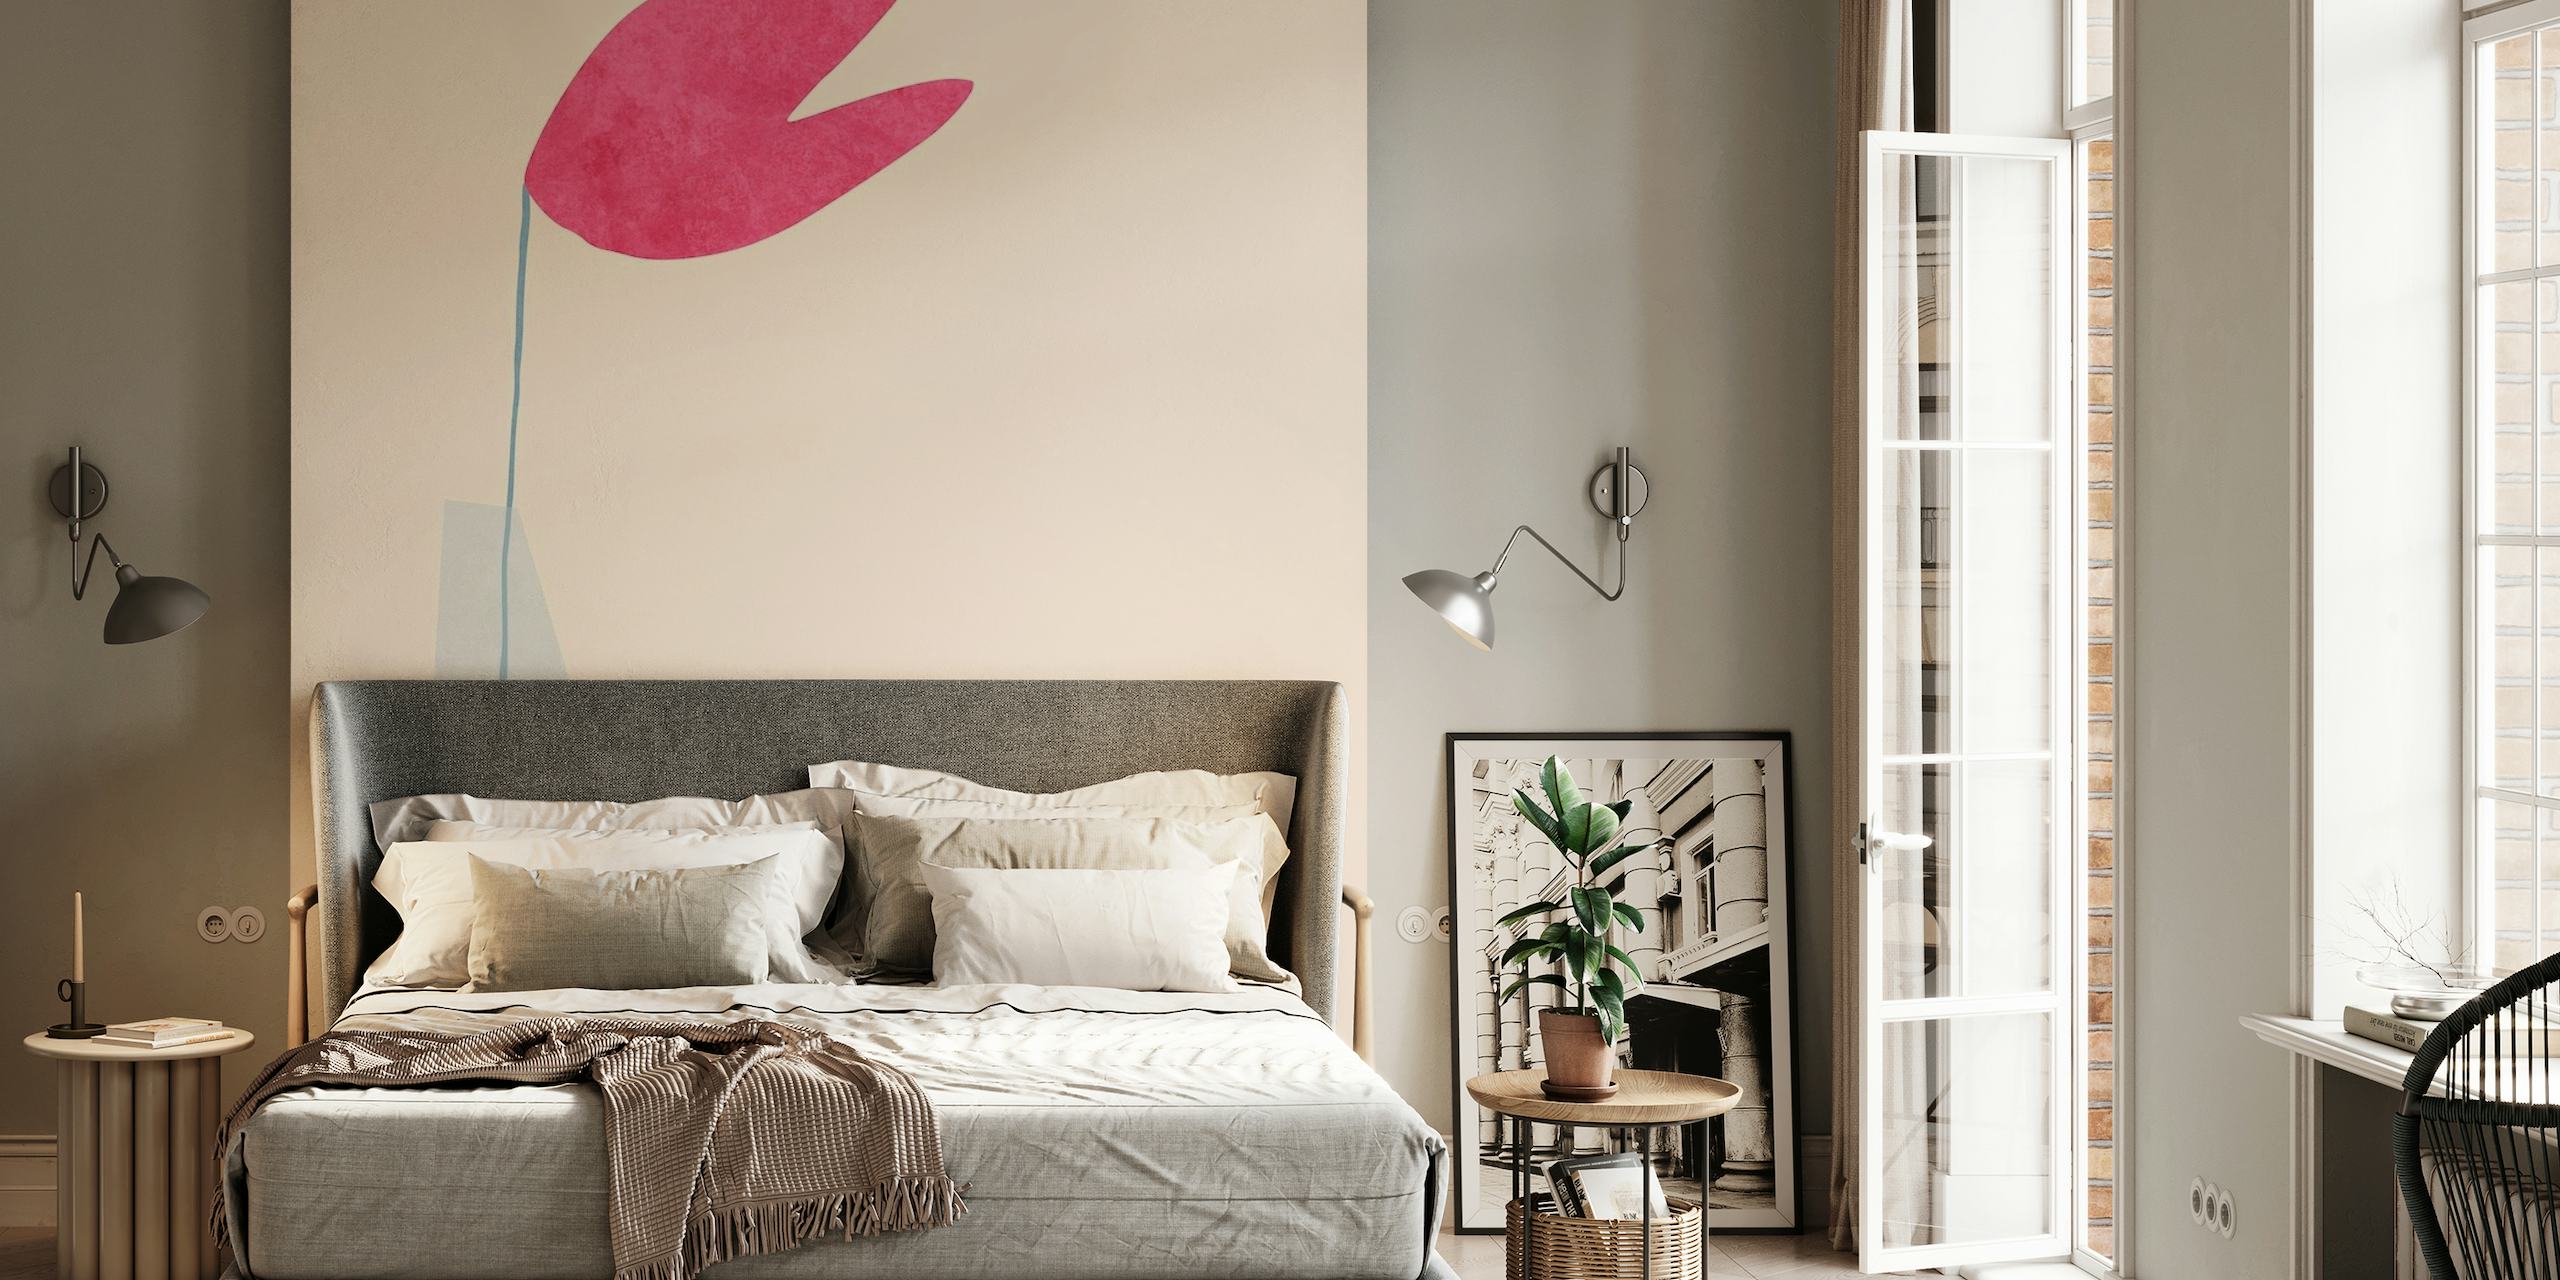 Abstraktes minimalistisches Wandbild einer rosa Herzform, balanciert auf einer schlanken Form mit pastellfarbenem Hintergrund